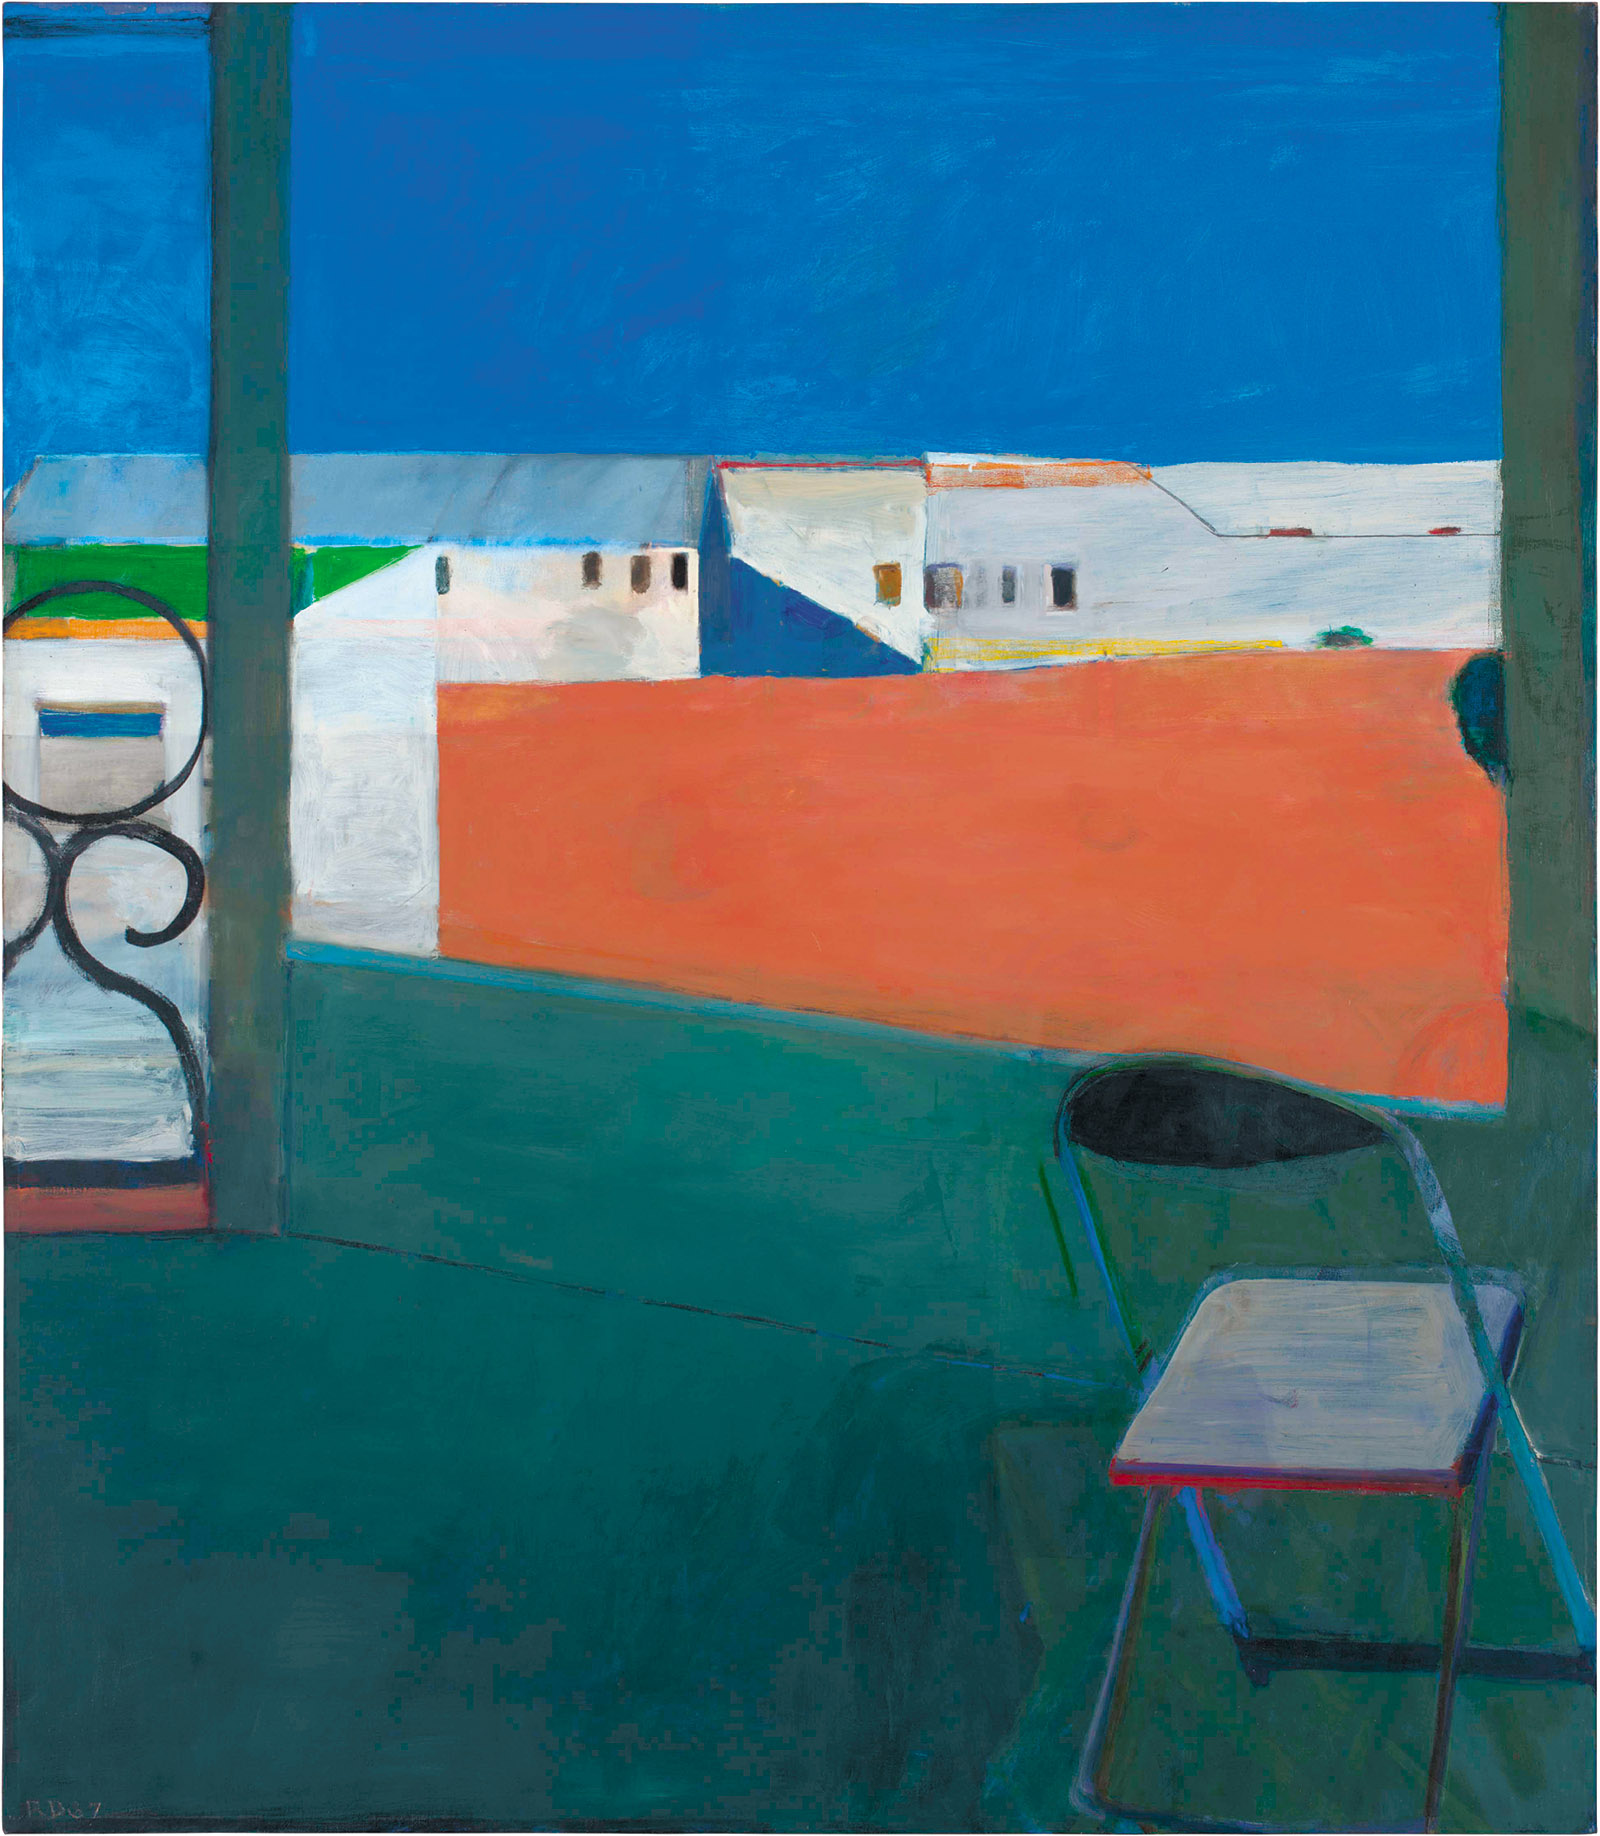 Richard Diebenkorn: Window, 92 x 80 inches, 1967